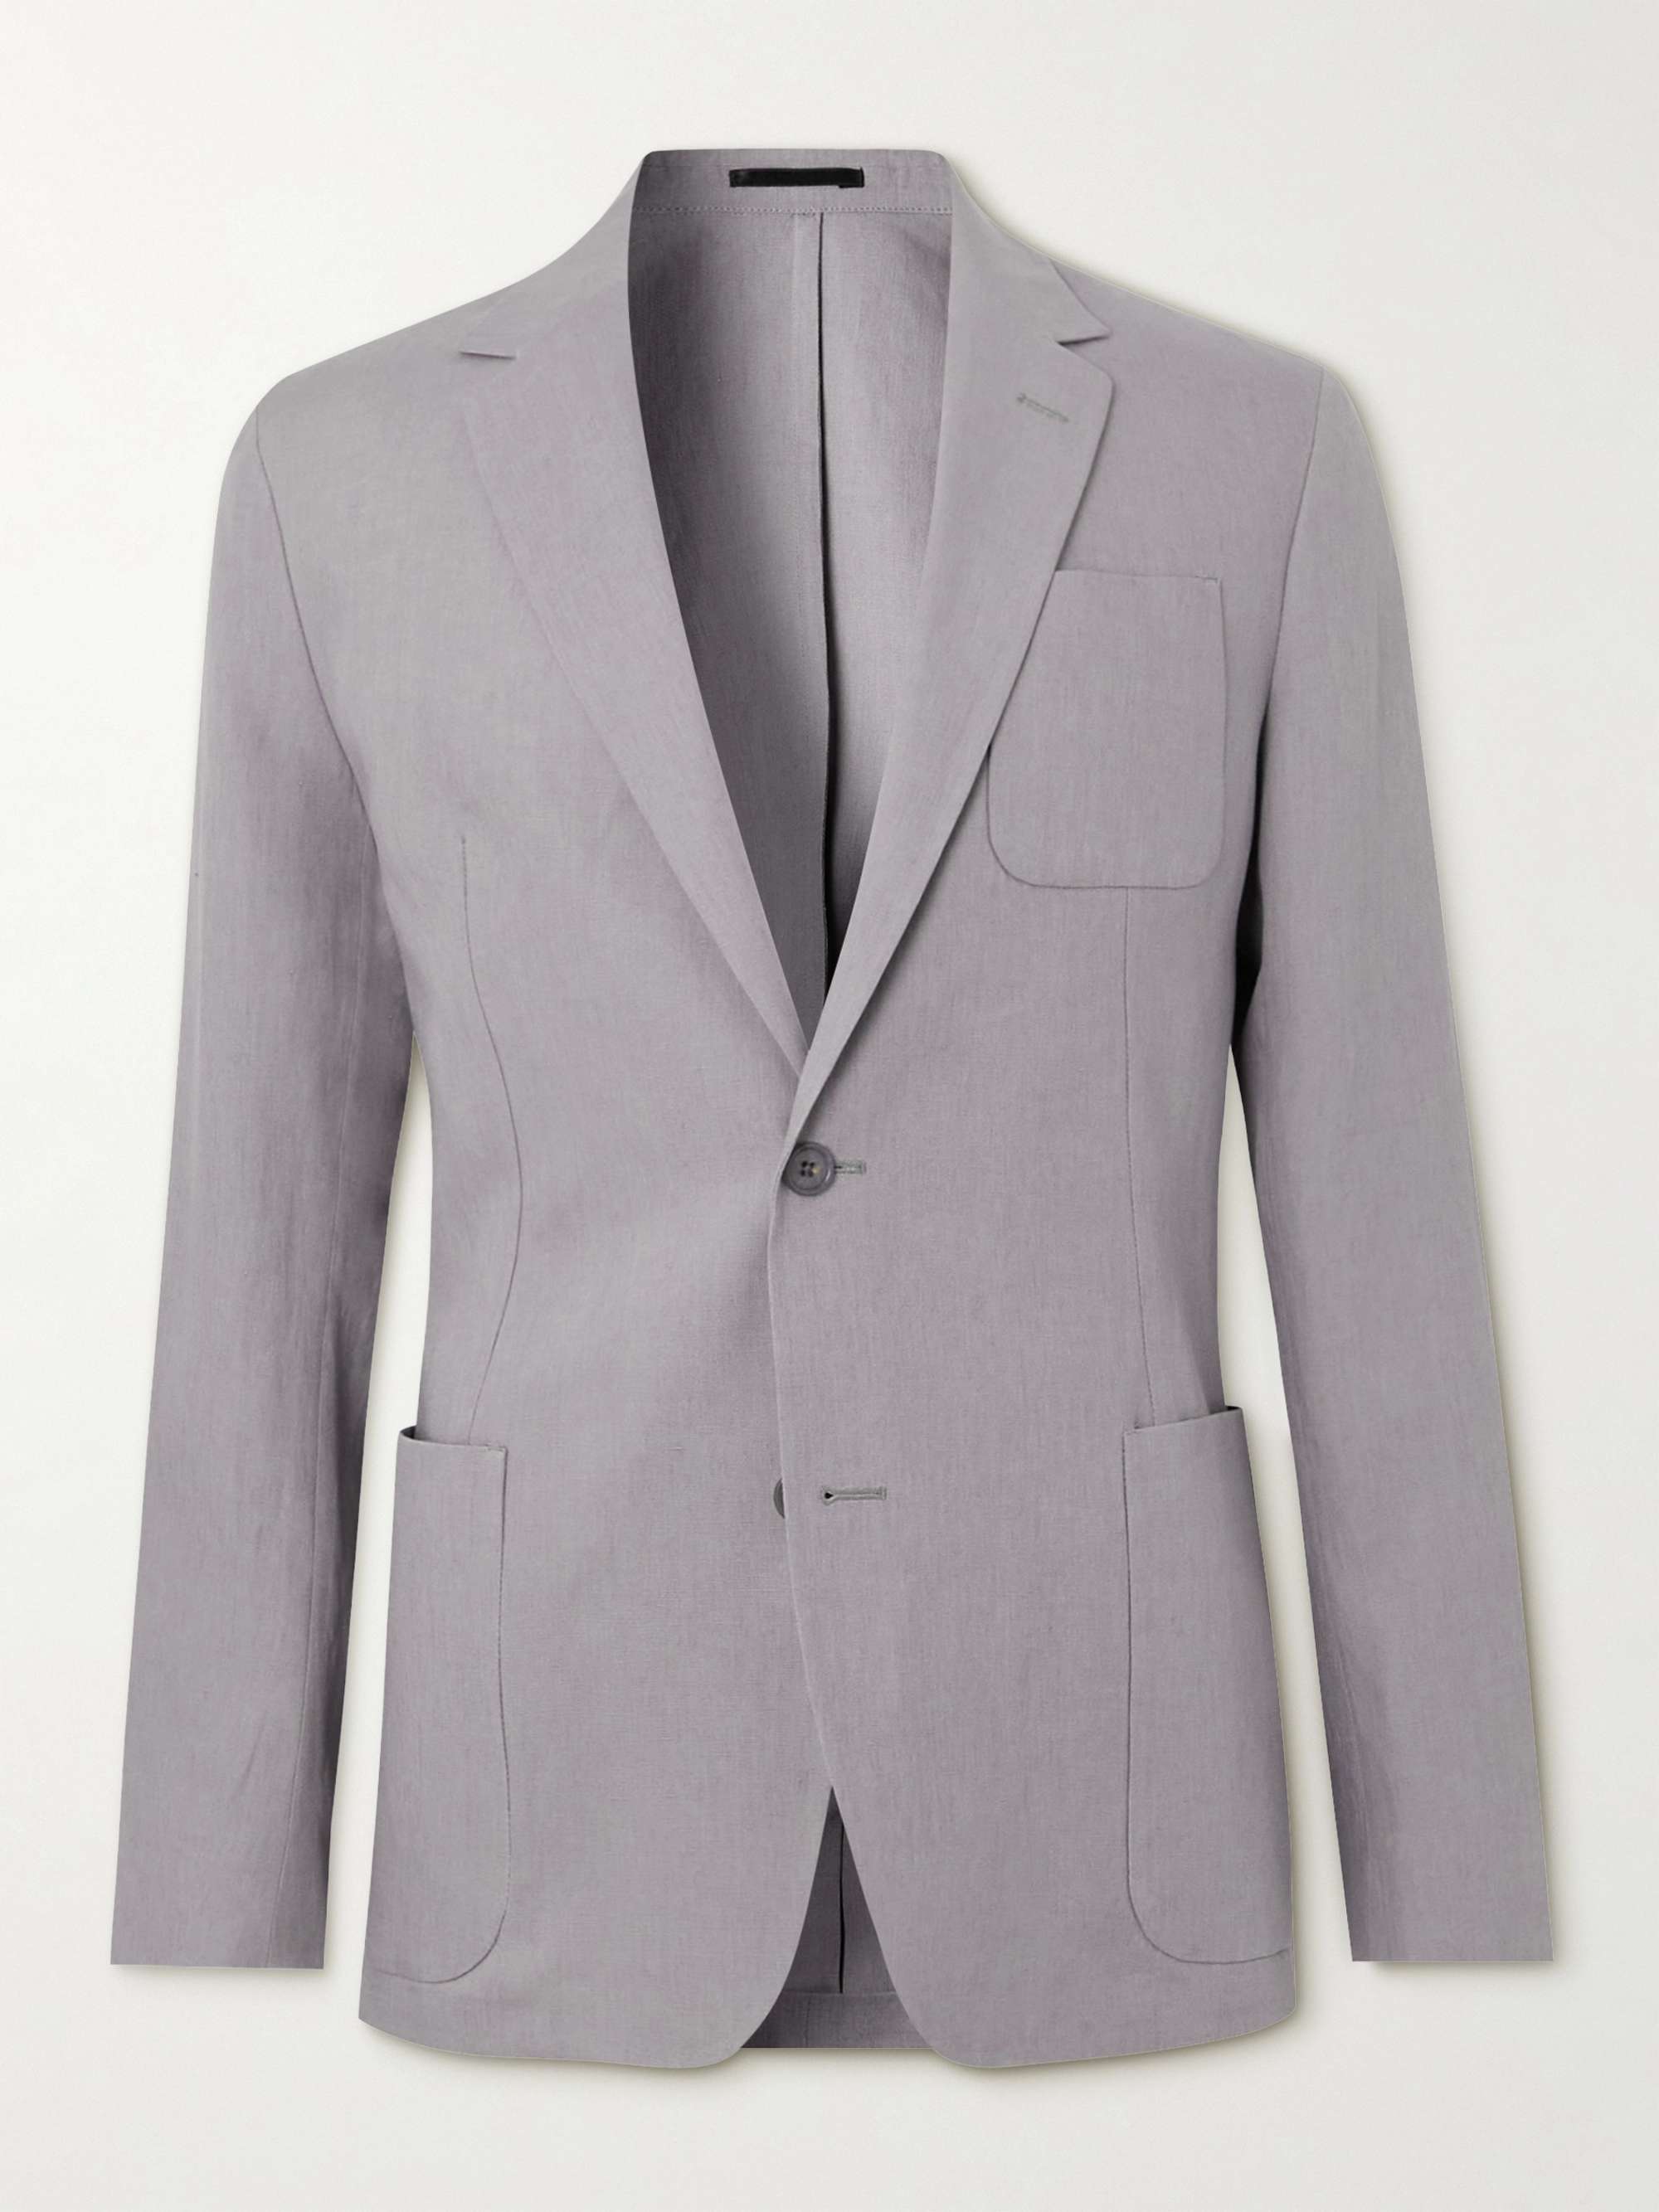 PAUL SMITH Linen Suit Jacket | MR PORTER